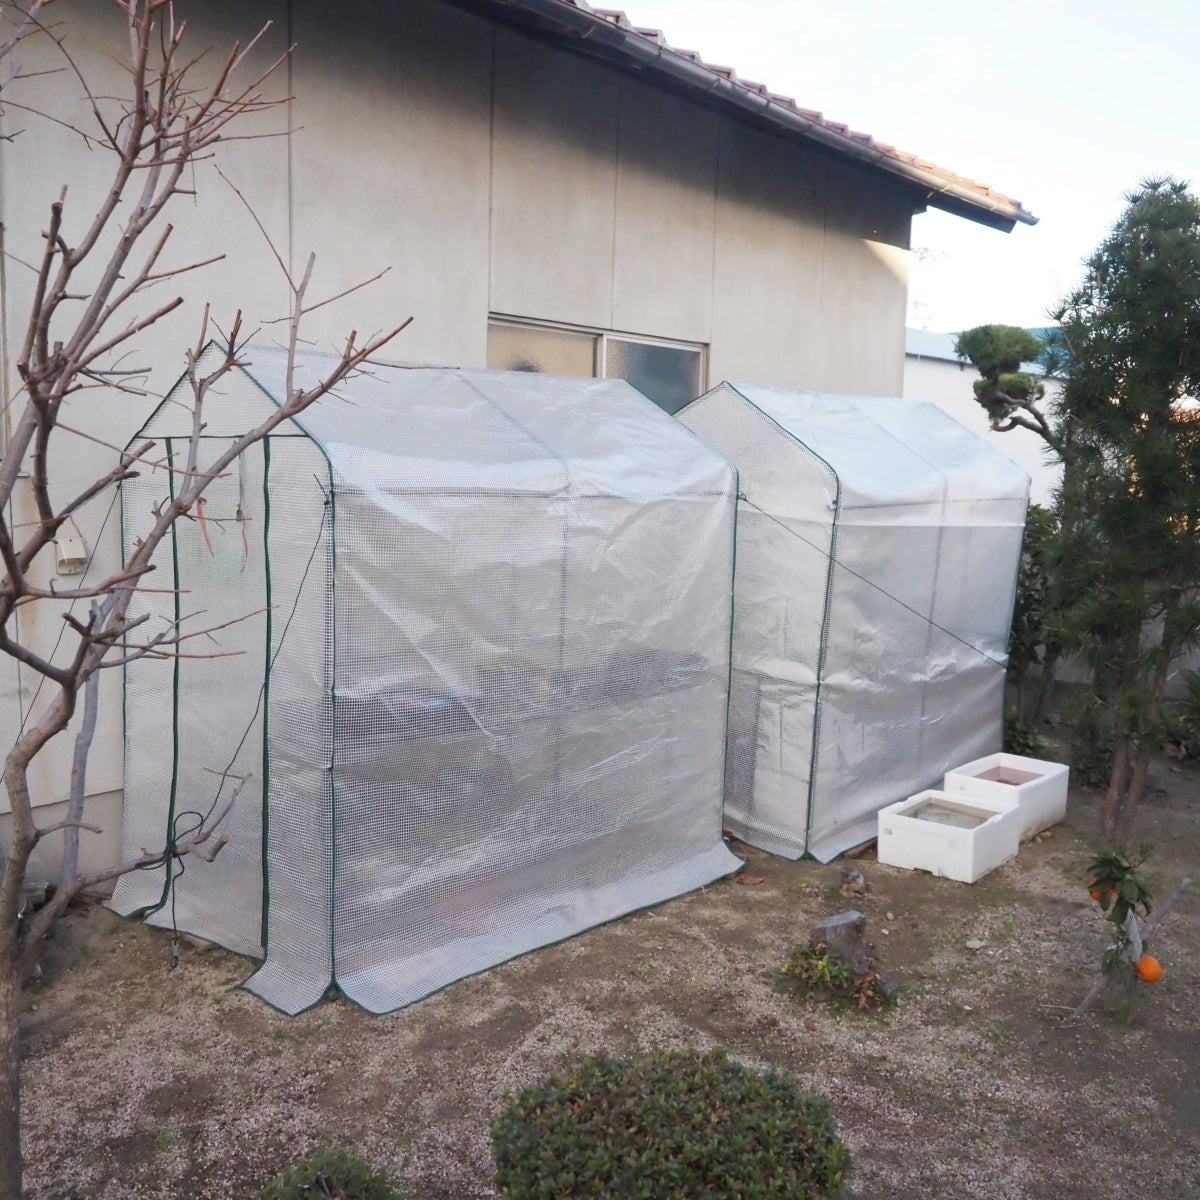 武田コーポレーション 温室・園芸・棚 グリーン 142×75×193cm ワイドグリーン温室 WGO-143